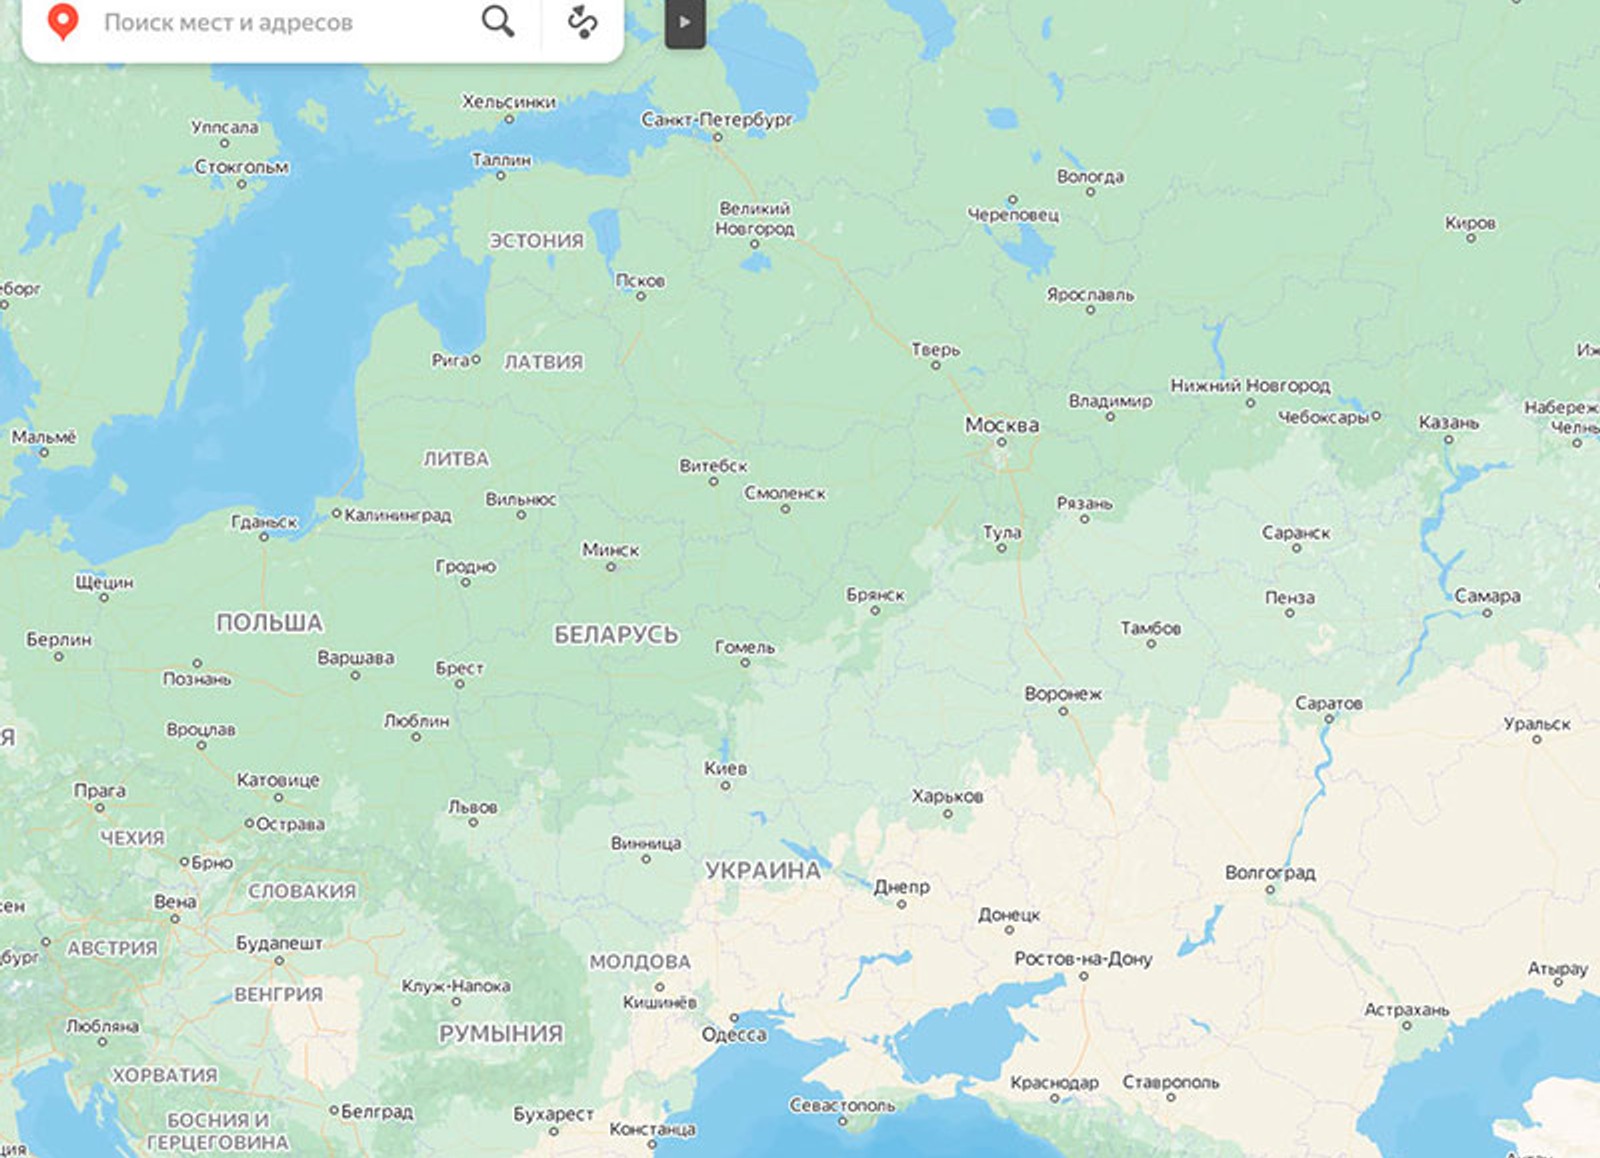 «Яндекс.Карты» перестали показывать государственные границы, чтобы «отображать мир вокруг» и «сделать акцент на природных объектах»